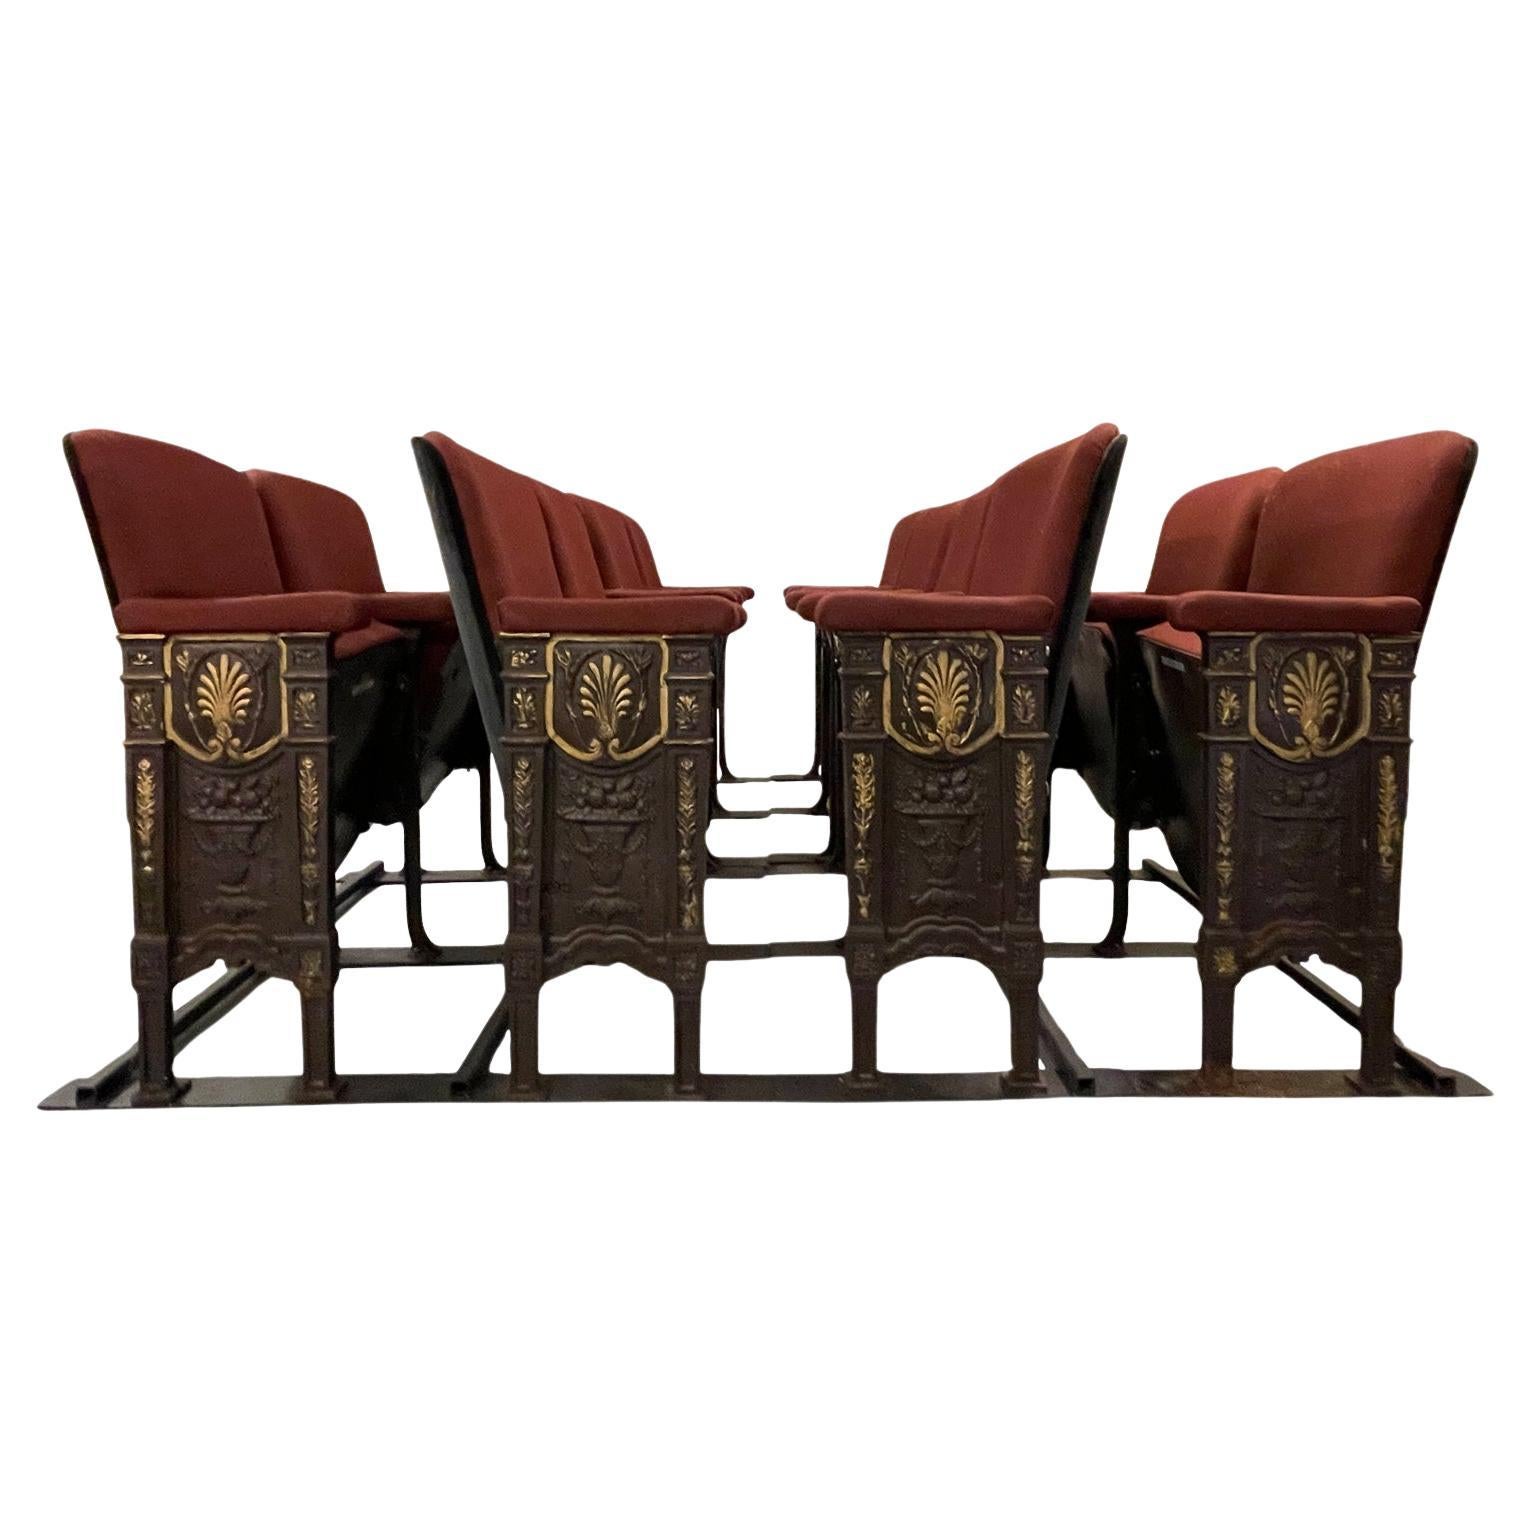 Original Studio54 Newyork Art Deco Theater Seating Chairs